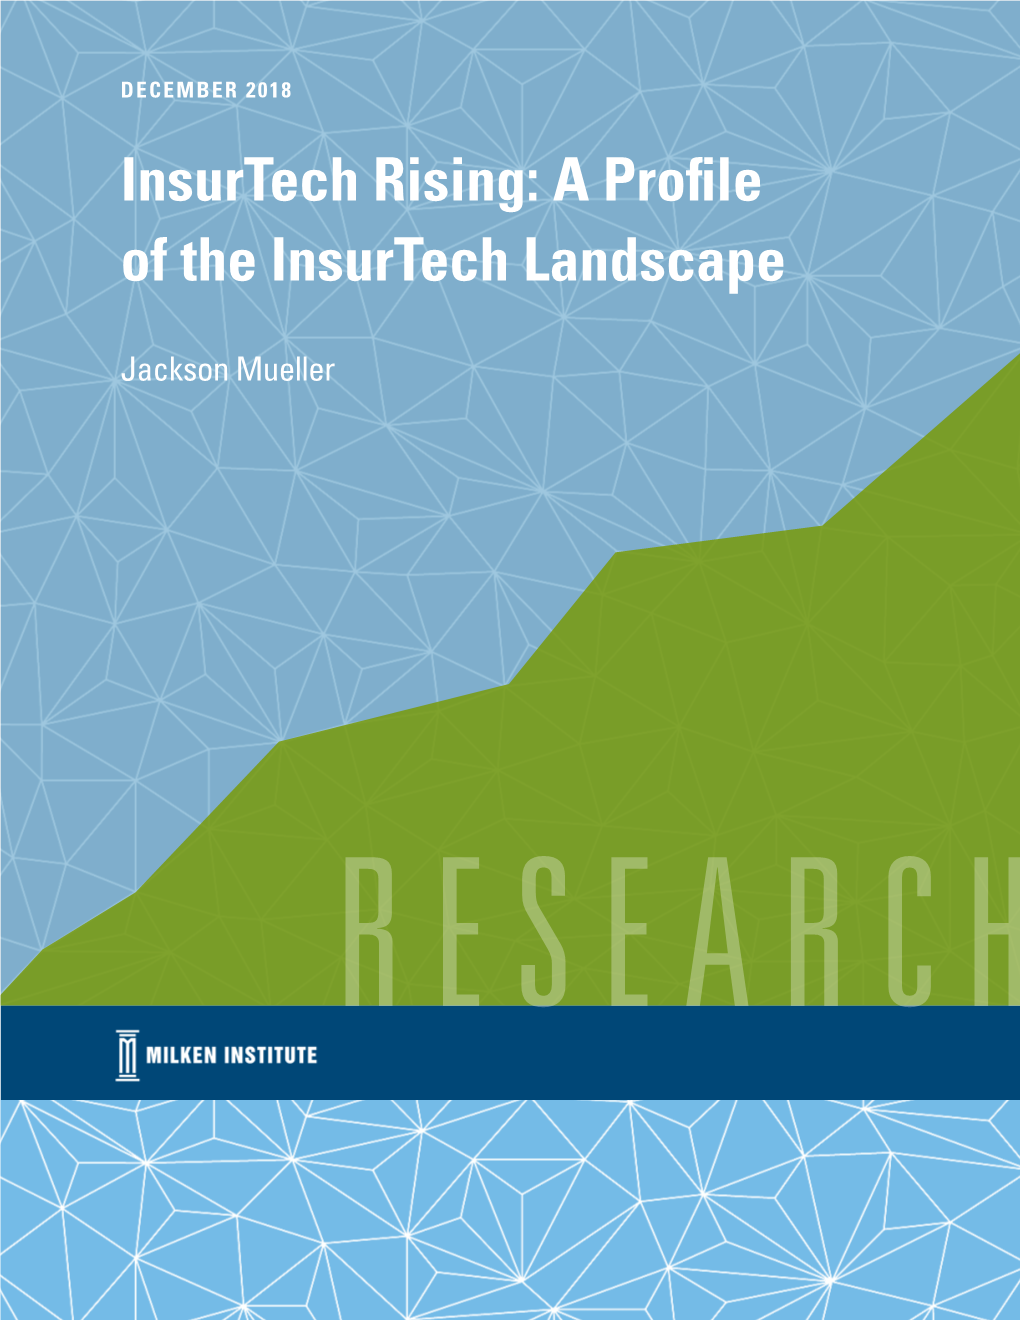 Insurtech Rising: a Profile of the Insurtech Landscape